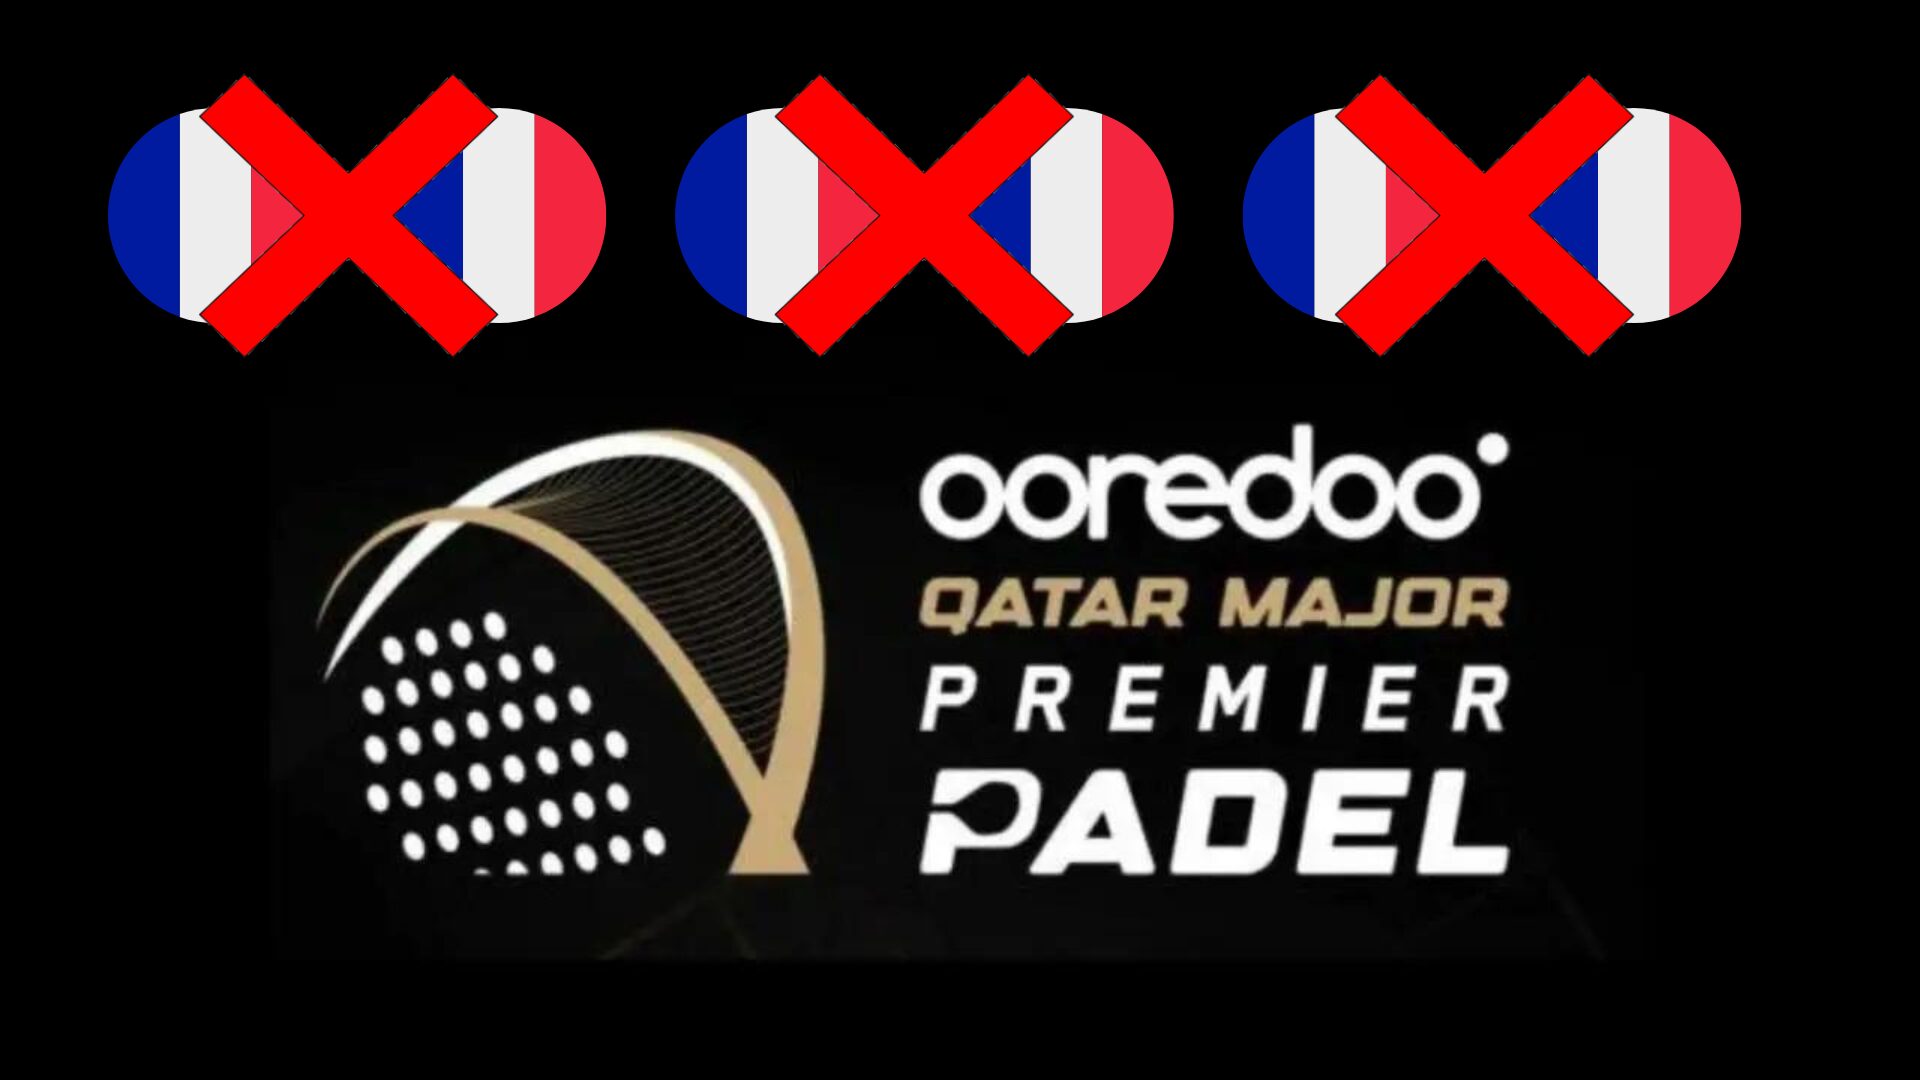 Premier Padel Qatar Major – Les Français débutent par trois défaites